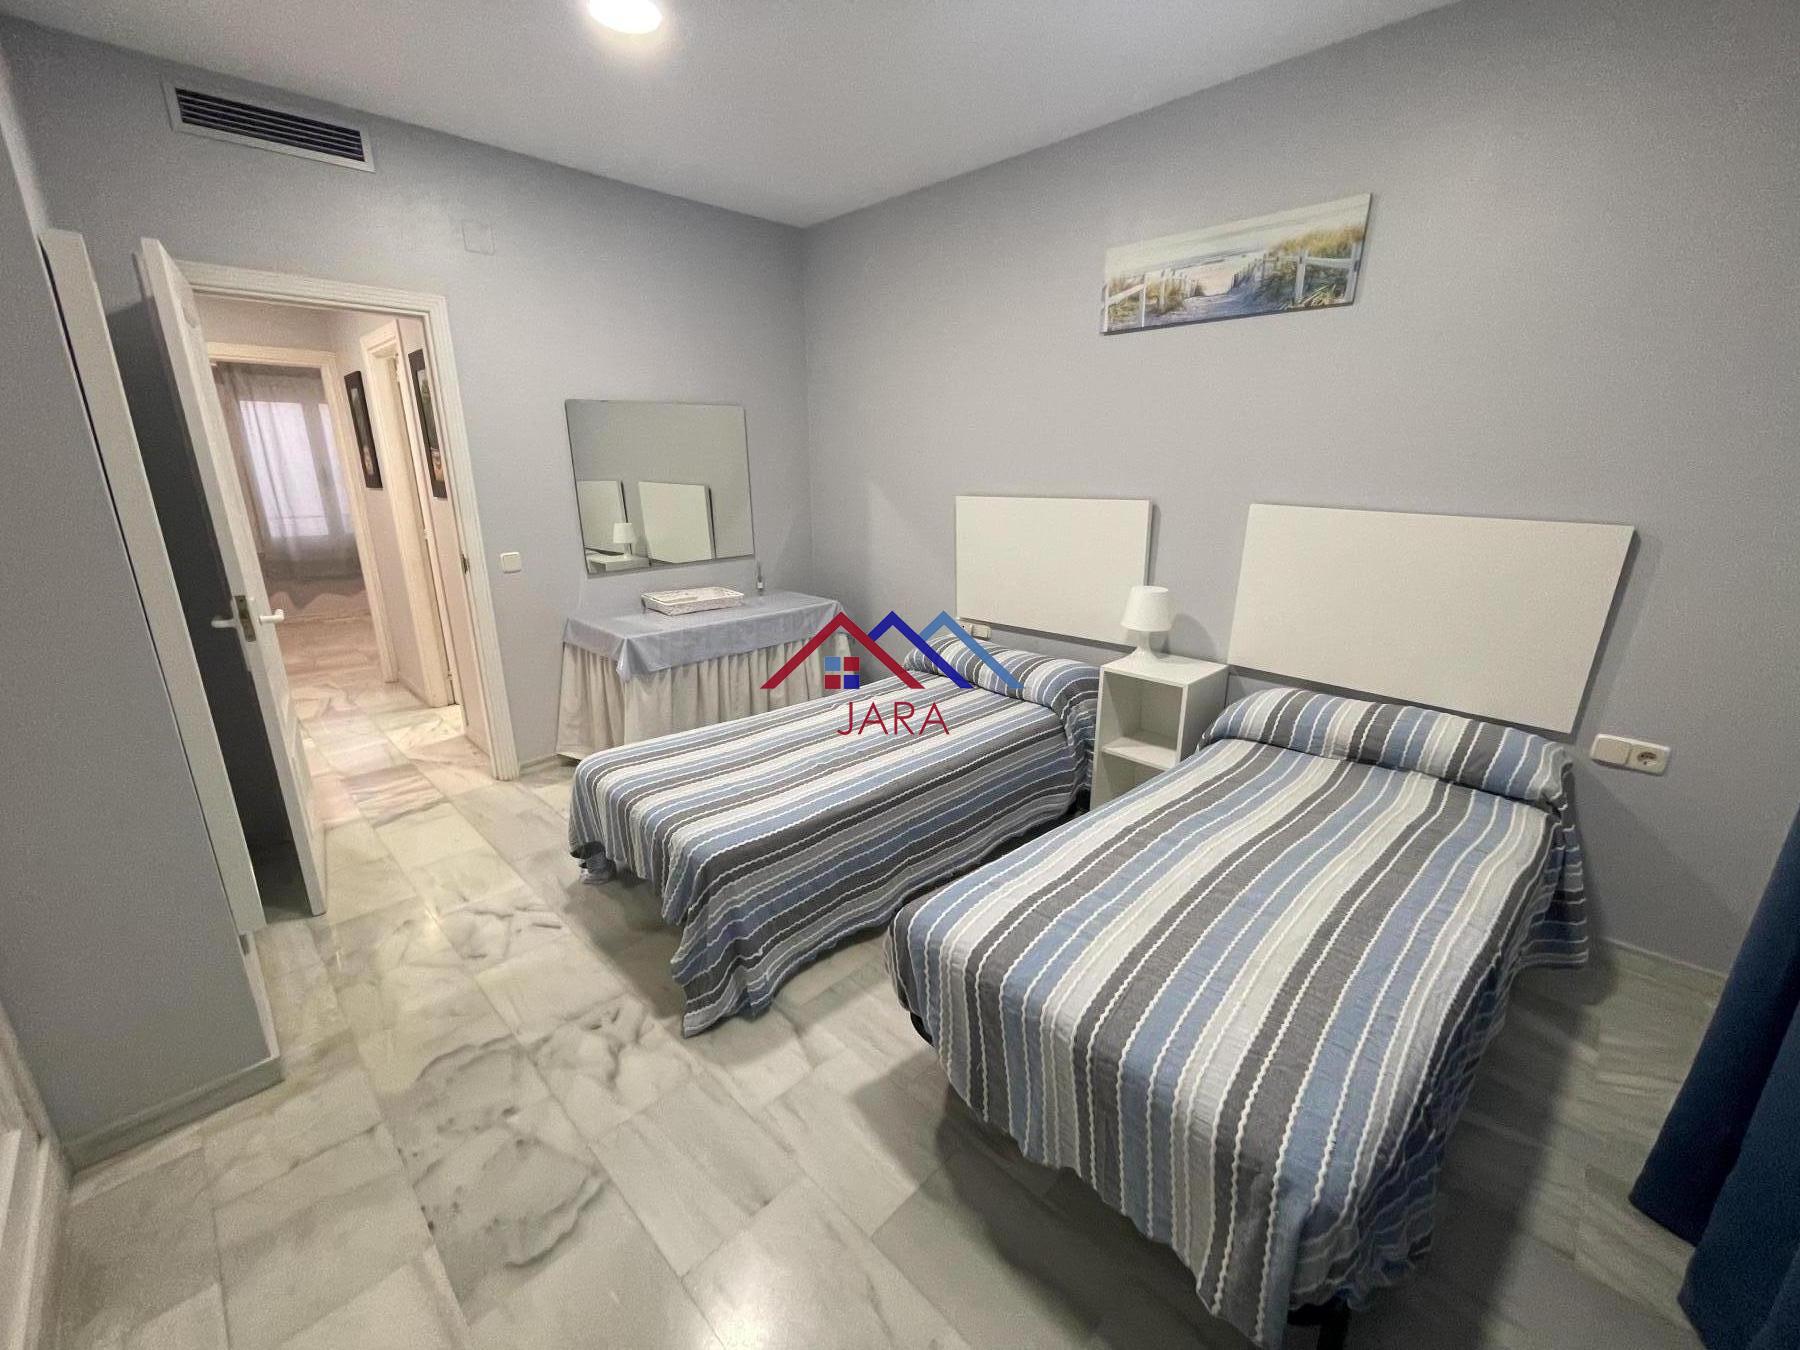 Huur van duplex appartement in Jerez de la Frontera